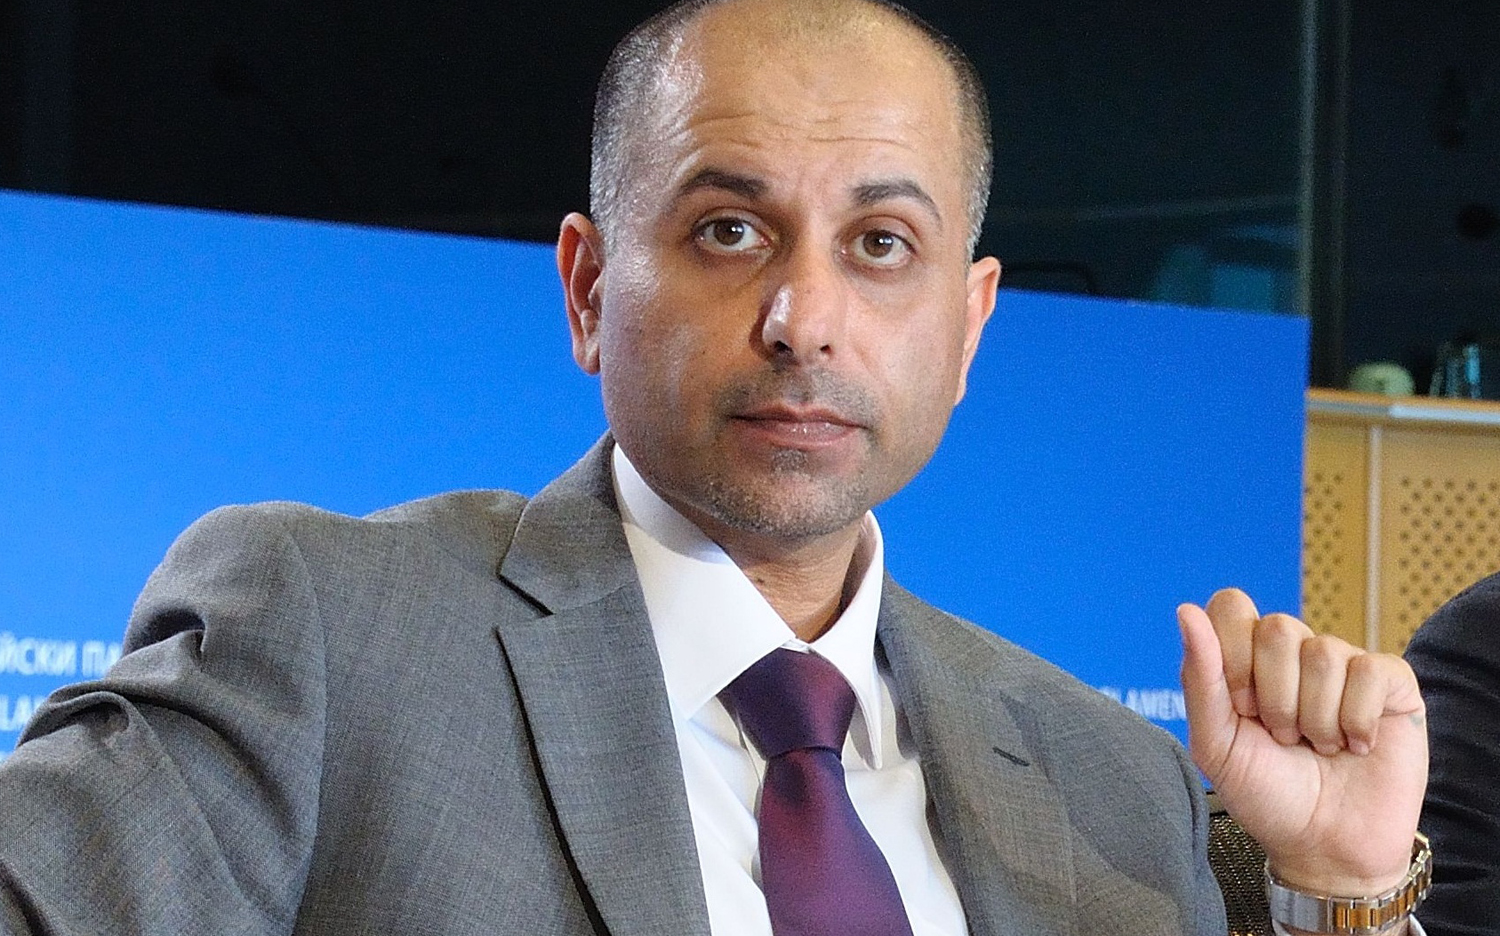 Member of the European Parliament (MEP), Sajjad Karim